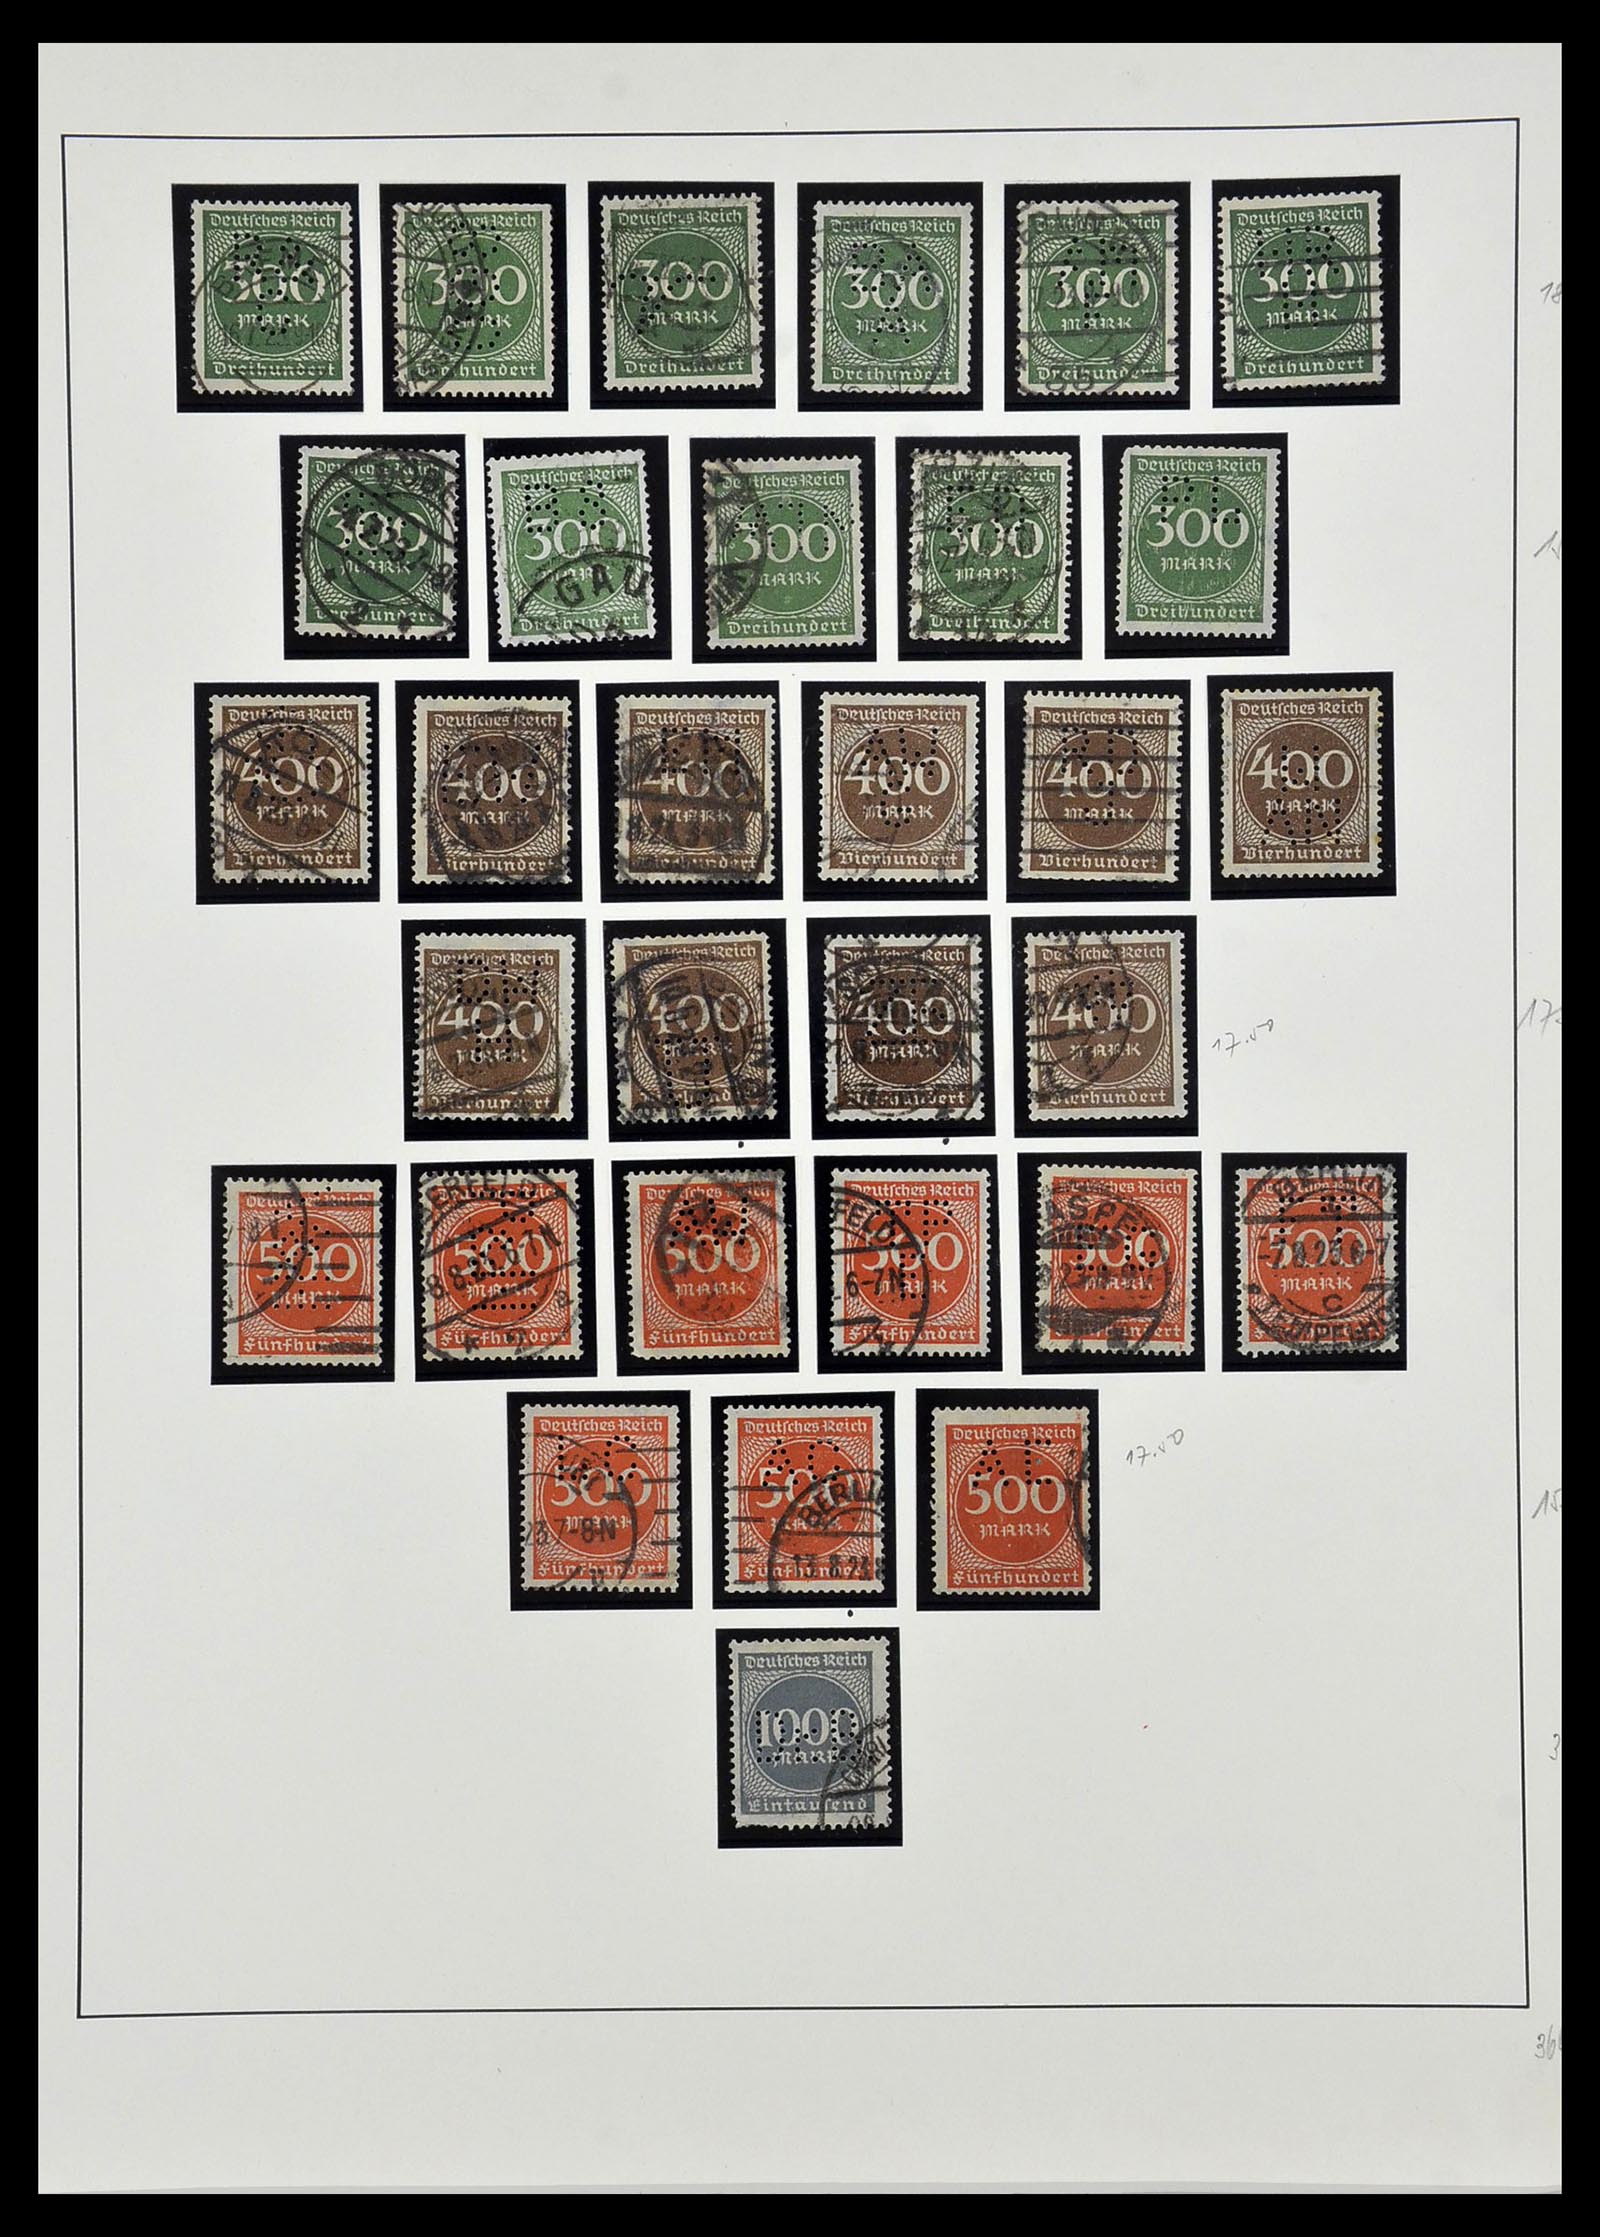 34409 015 - Stamp Collection 34409 German Reich perfins.